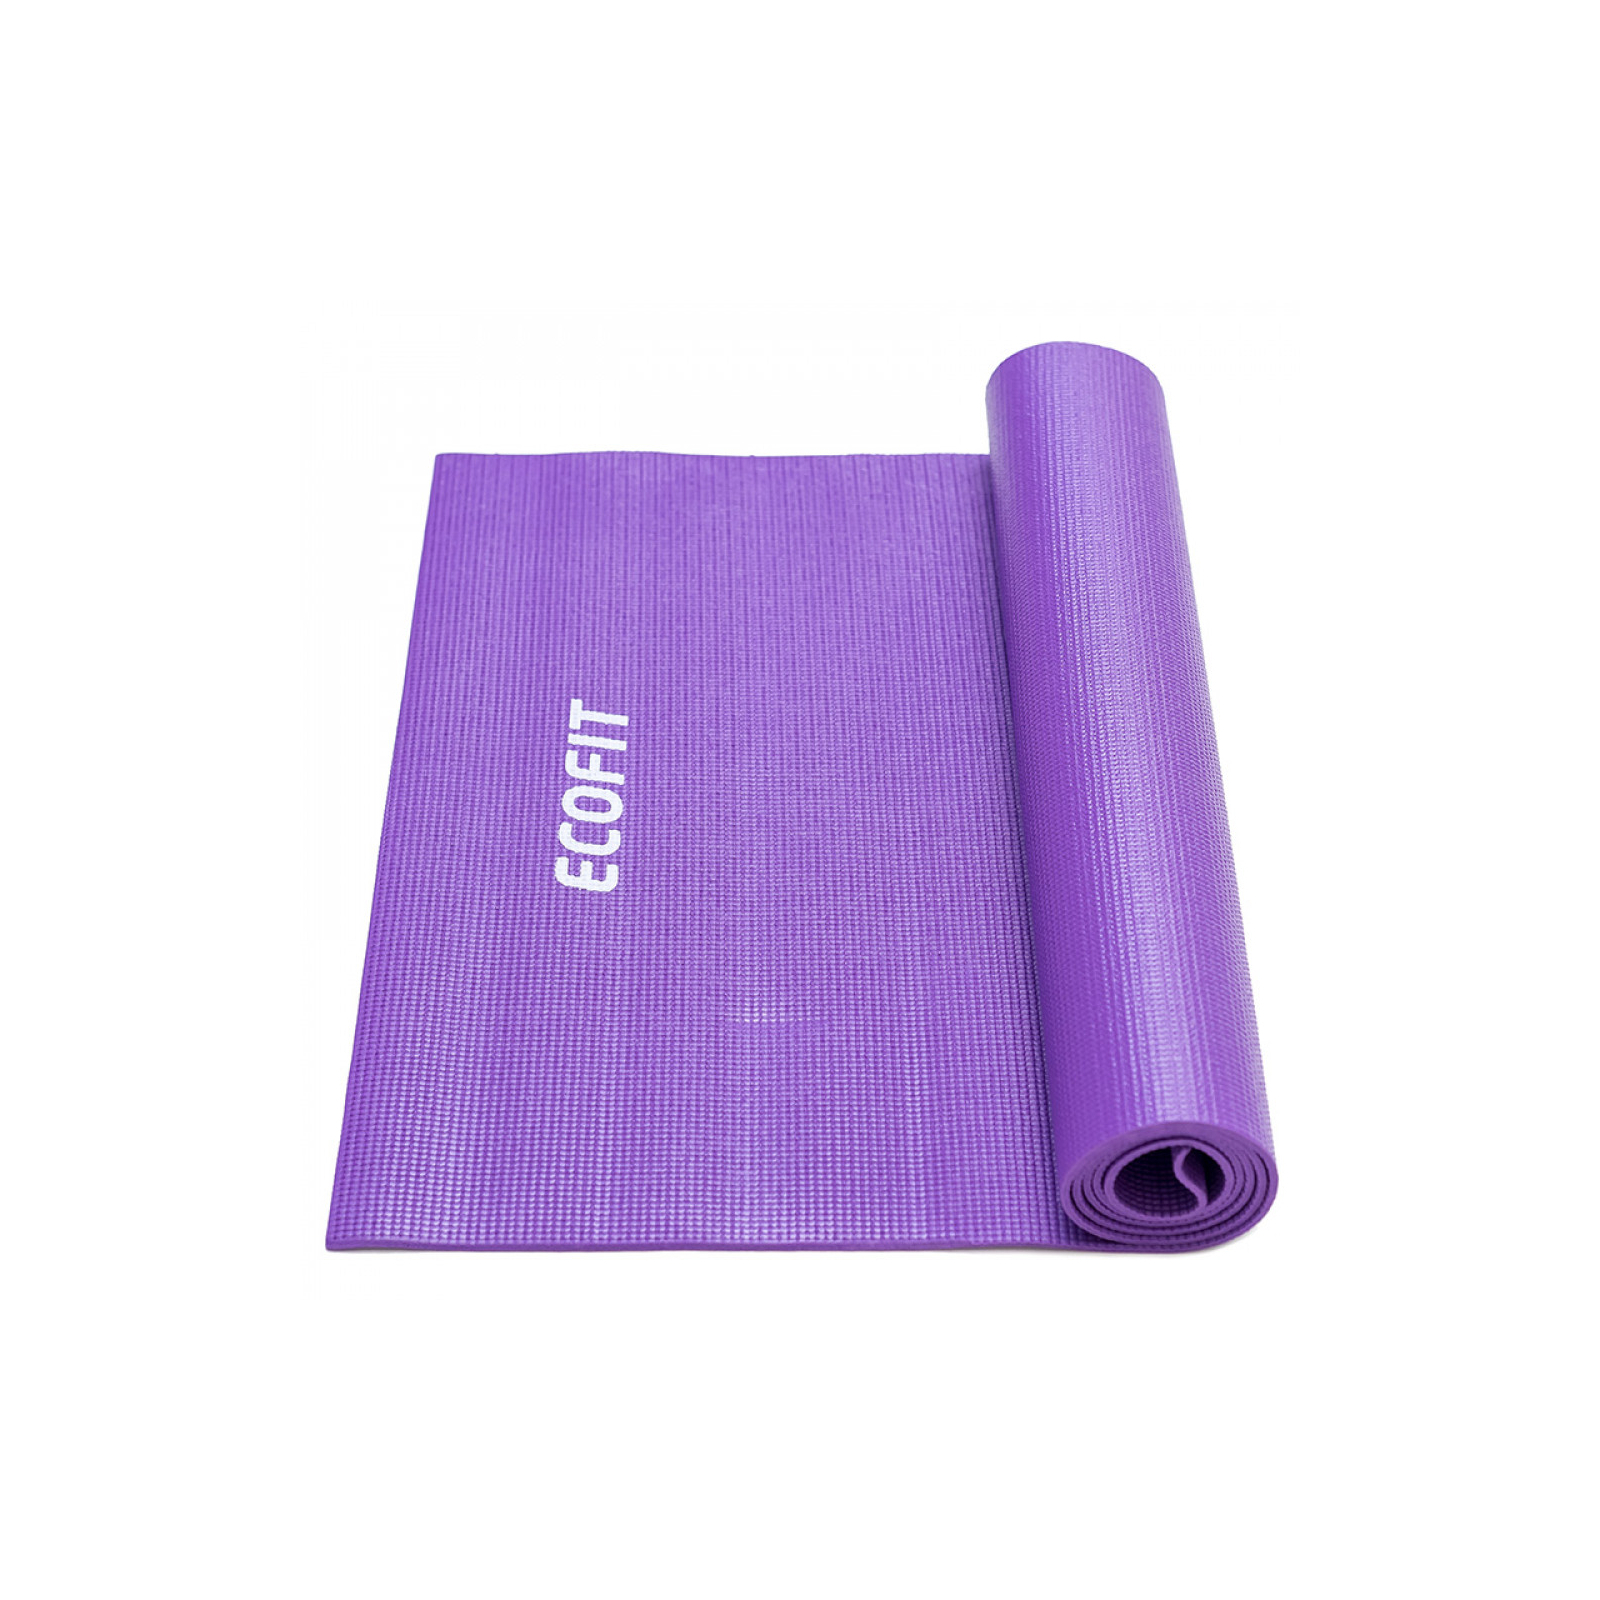 Коврик для фитнеса Ecofit MD9010 1730*610*6мм Violet (К00015259)